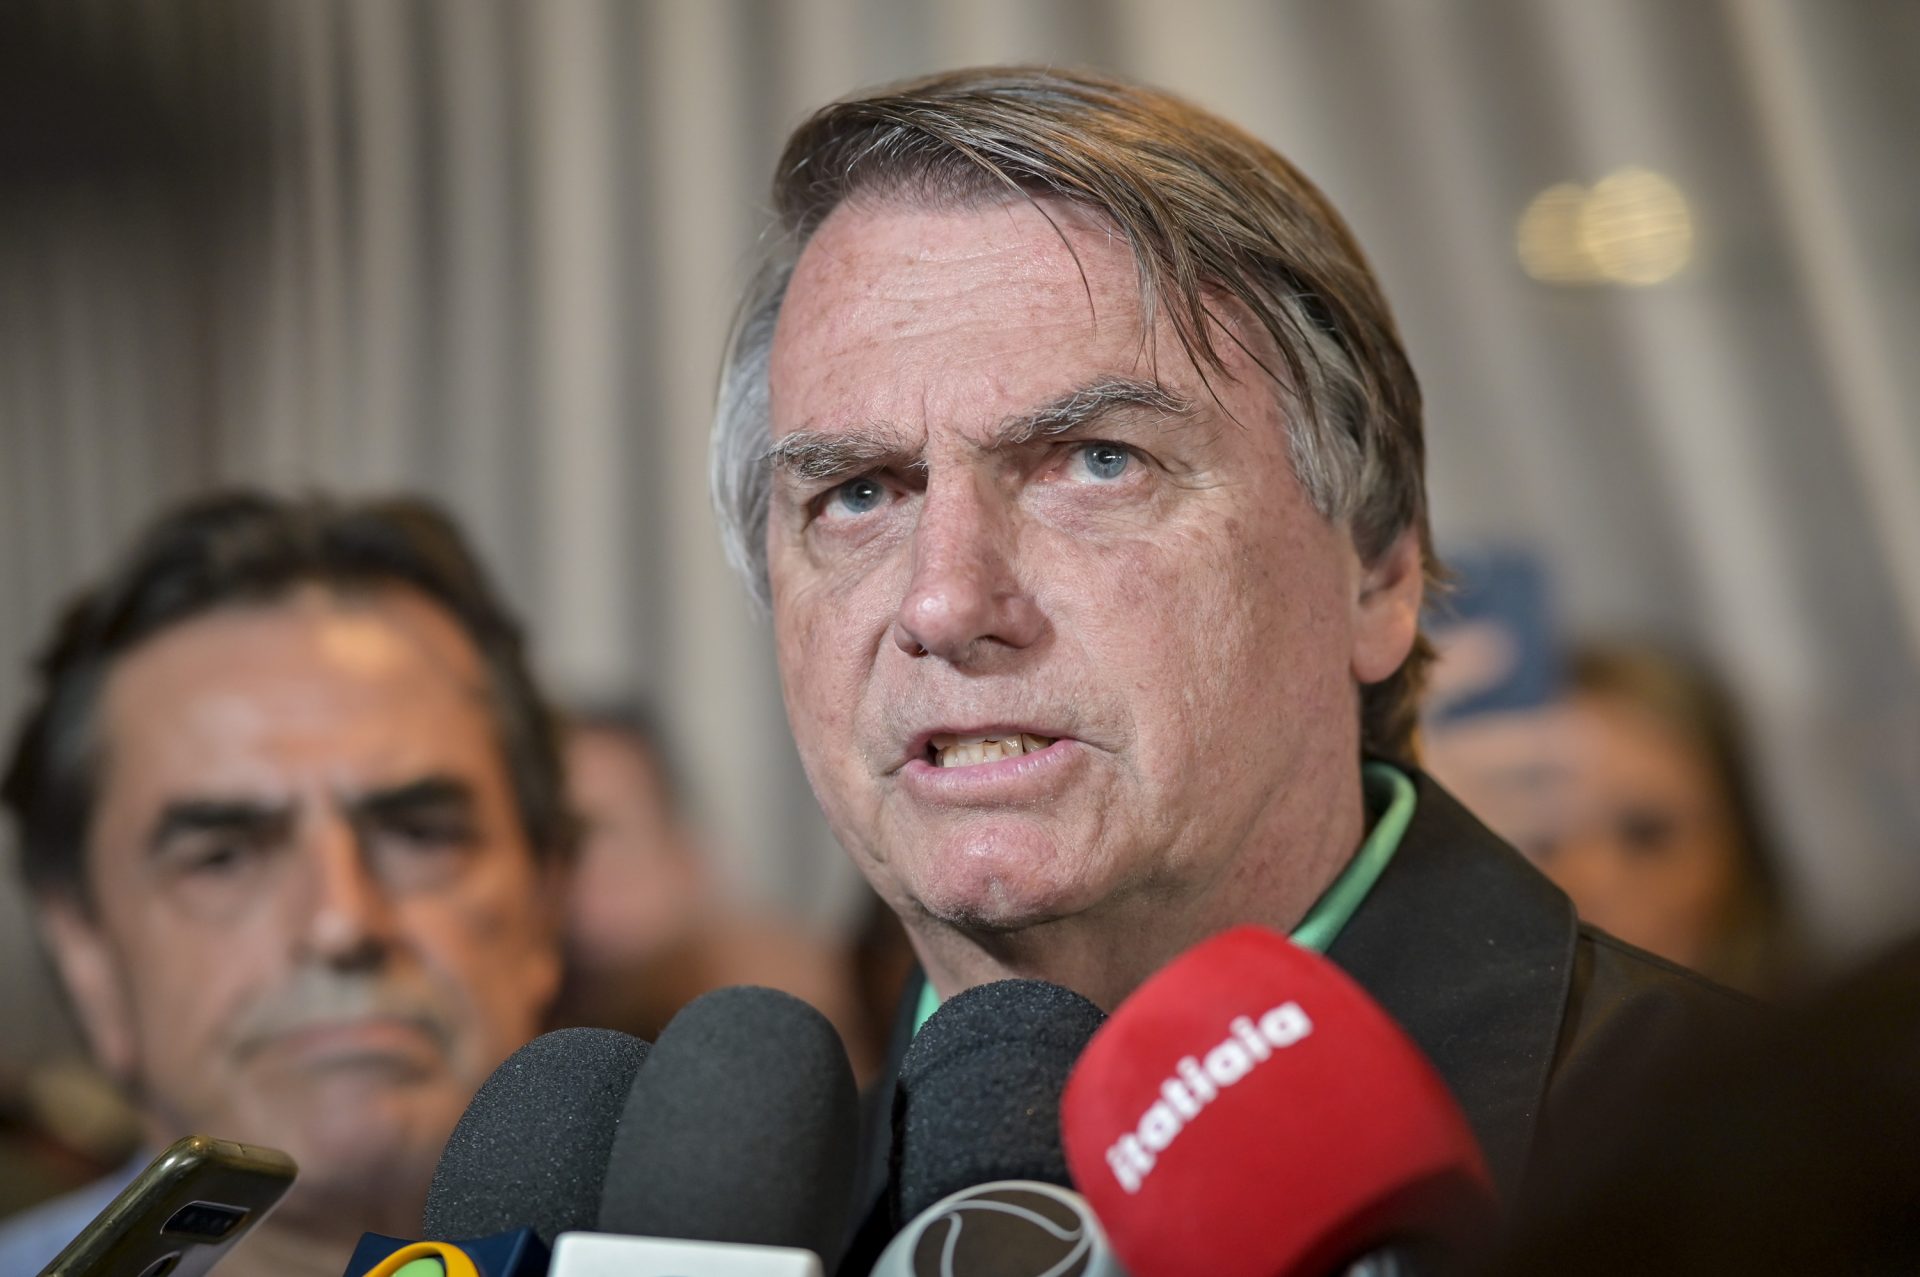 El expresidente de Brasil Jair Bolsonaro, participa de una rueda de prensa hoy en Belo Horizonte (Brasil). EFE/João Guilherme Arenazio